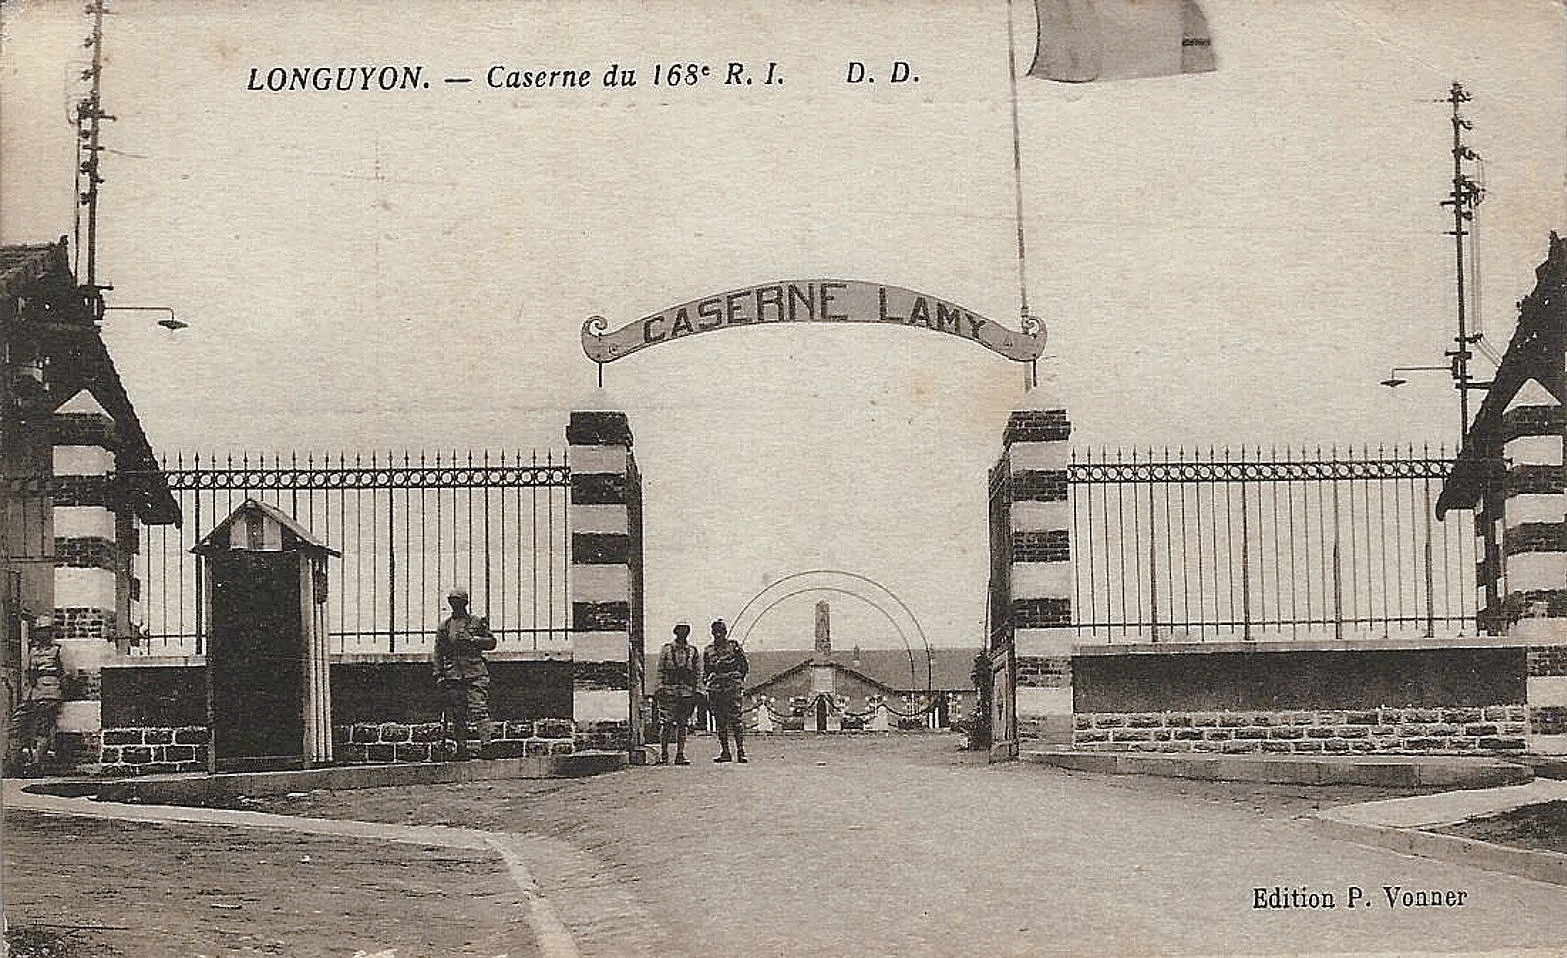 Ligne Maginot - LONGUYON - CASERNE LAMY - (Camp de sureté) - LONGUYON
Entrée de la caserne Lamy du 168° RI